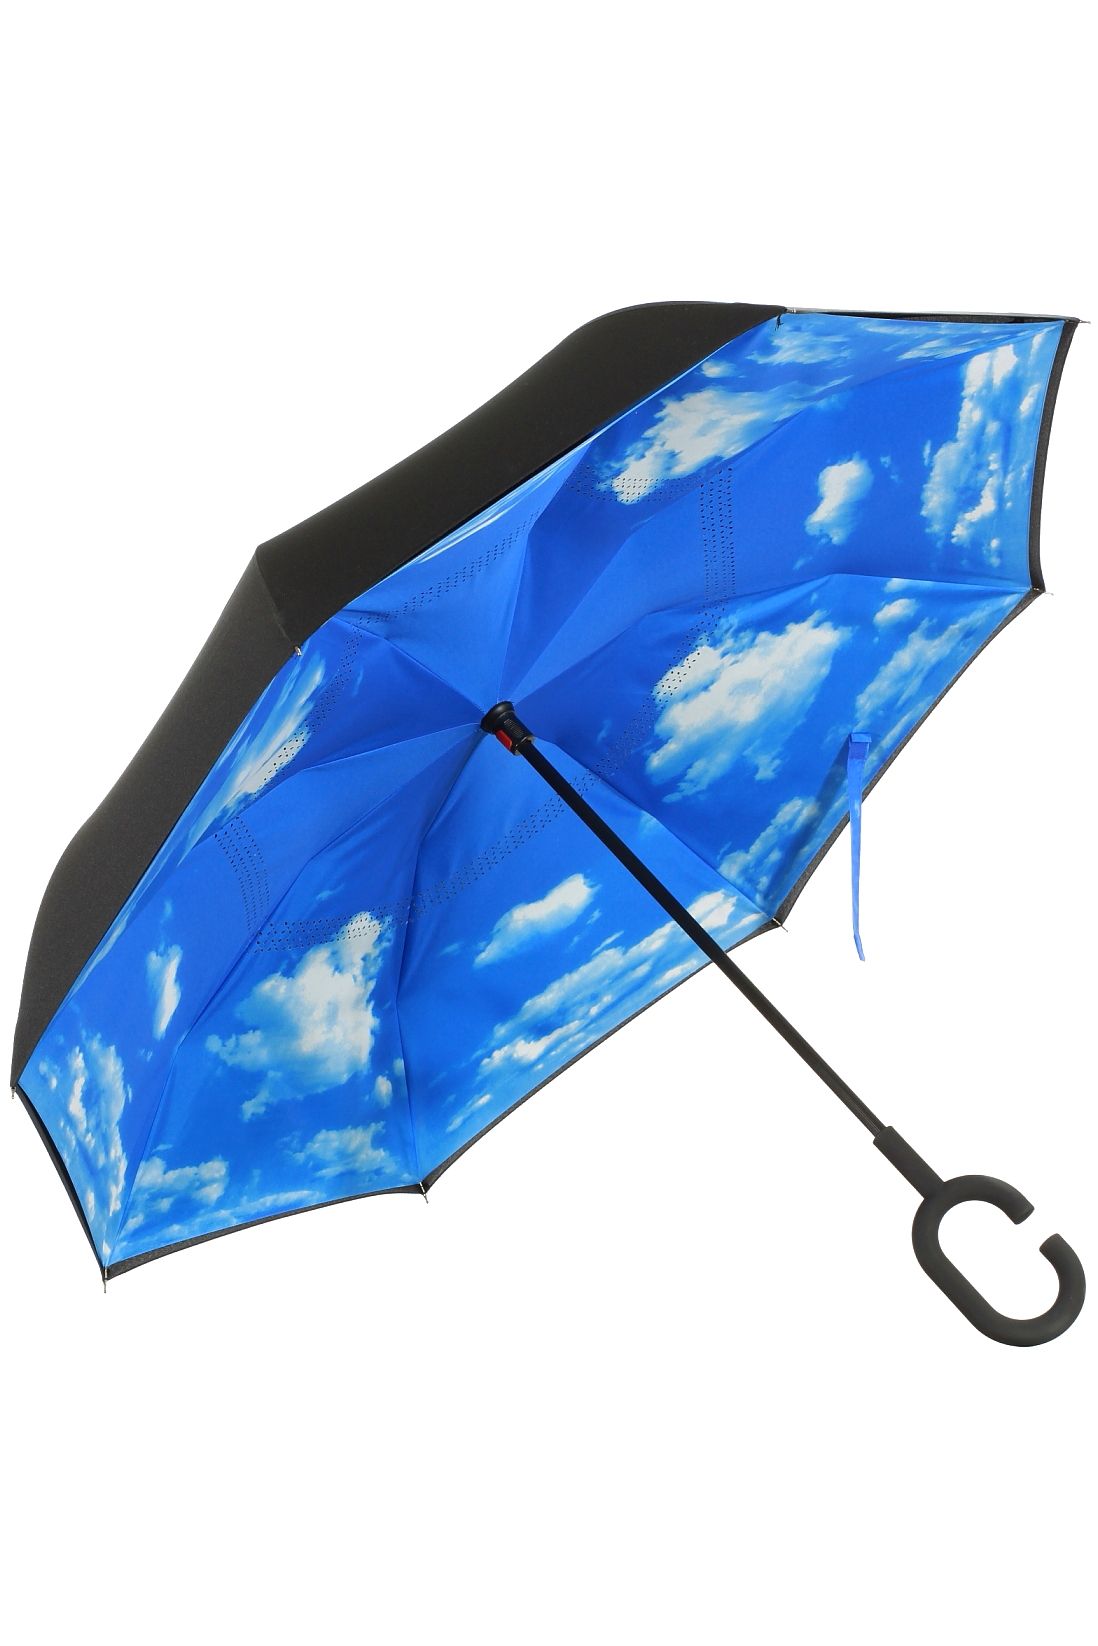 Где купить зонтик. Mistral am-6008907 зонт. Зонт Romit автомат. Зонты трости Ферретти. Зонт Tamim-6a.